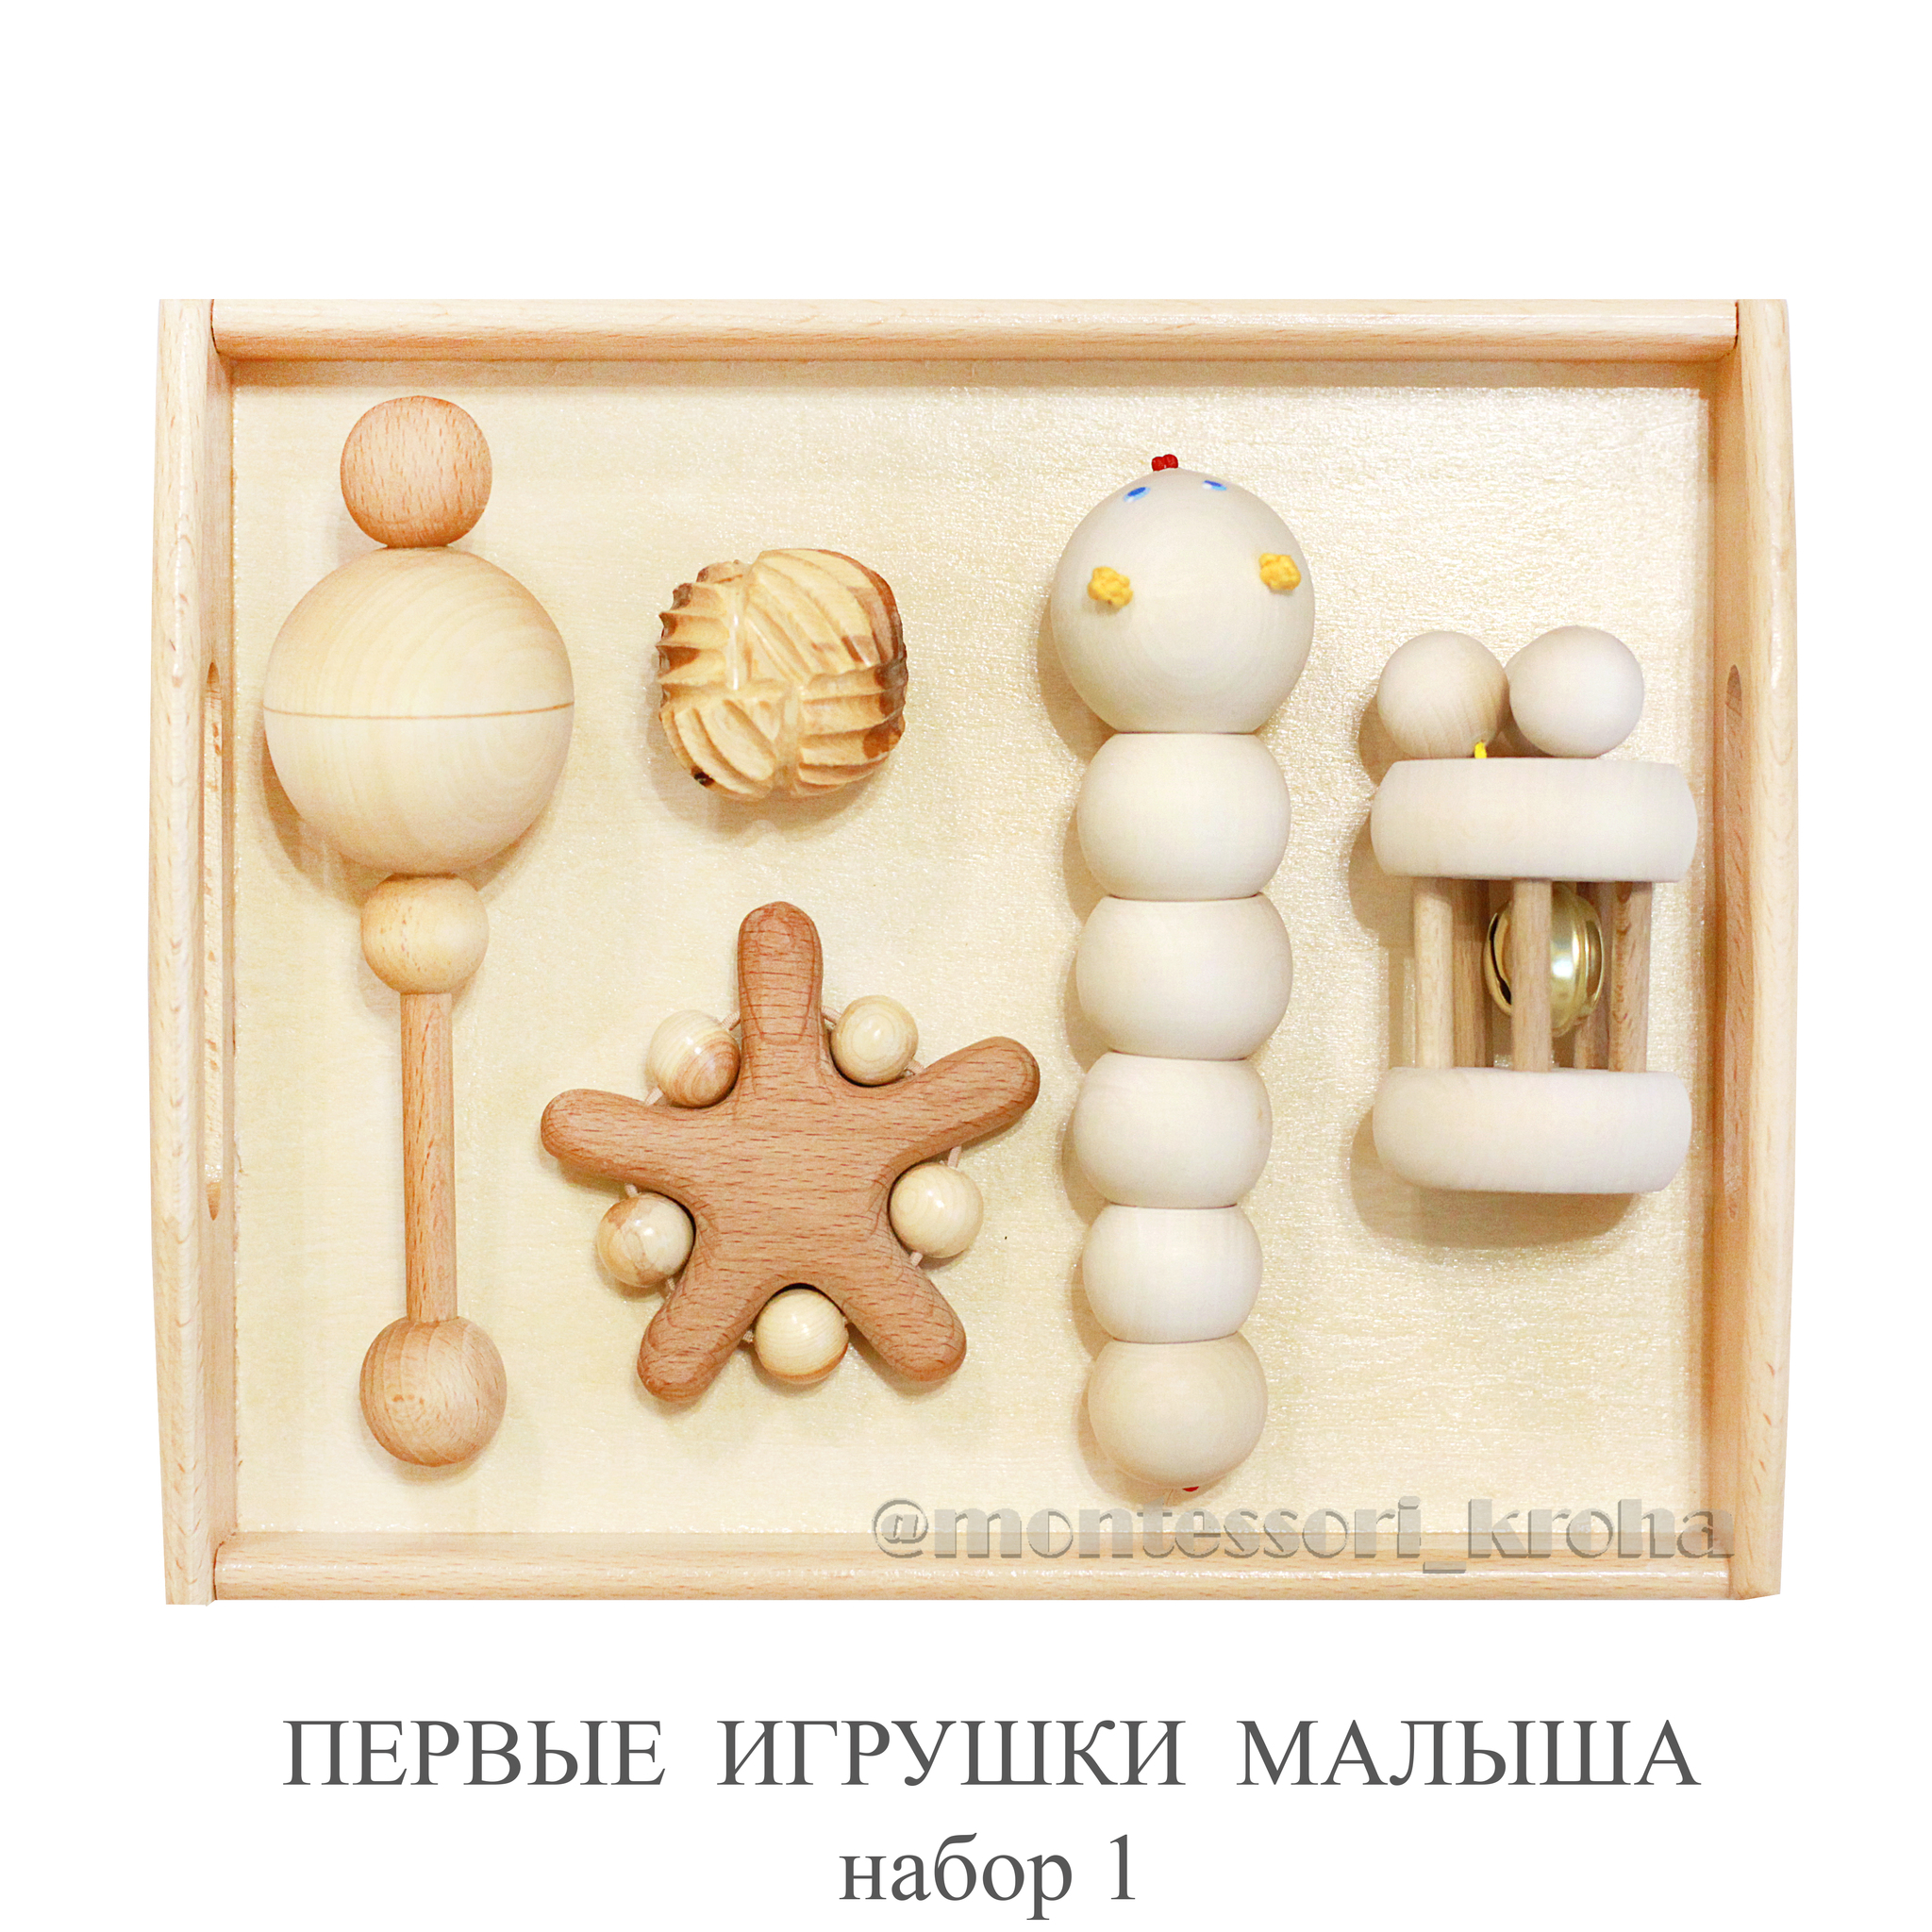 Развивающие игрушки для детей от 1 года – купить в Москве в manikyrsha.ru